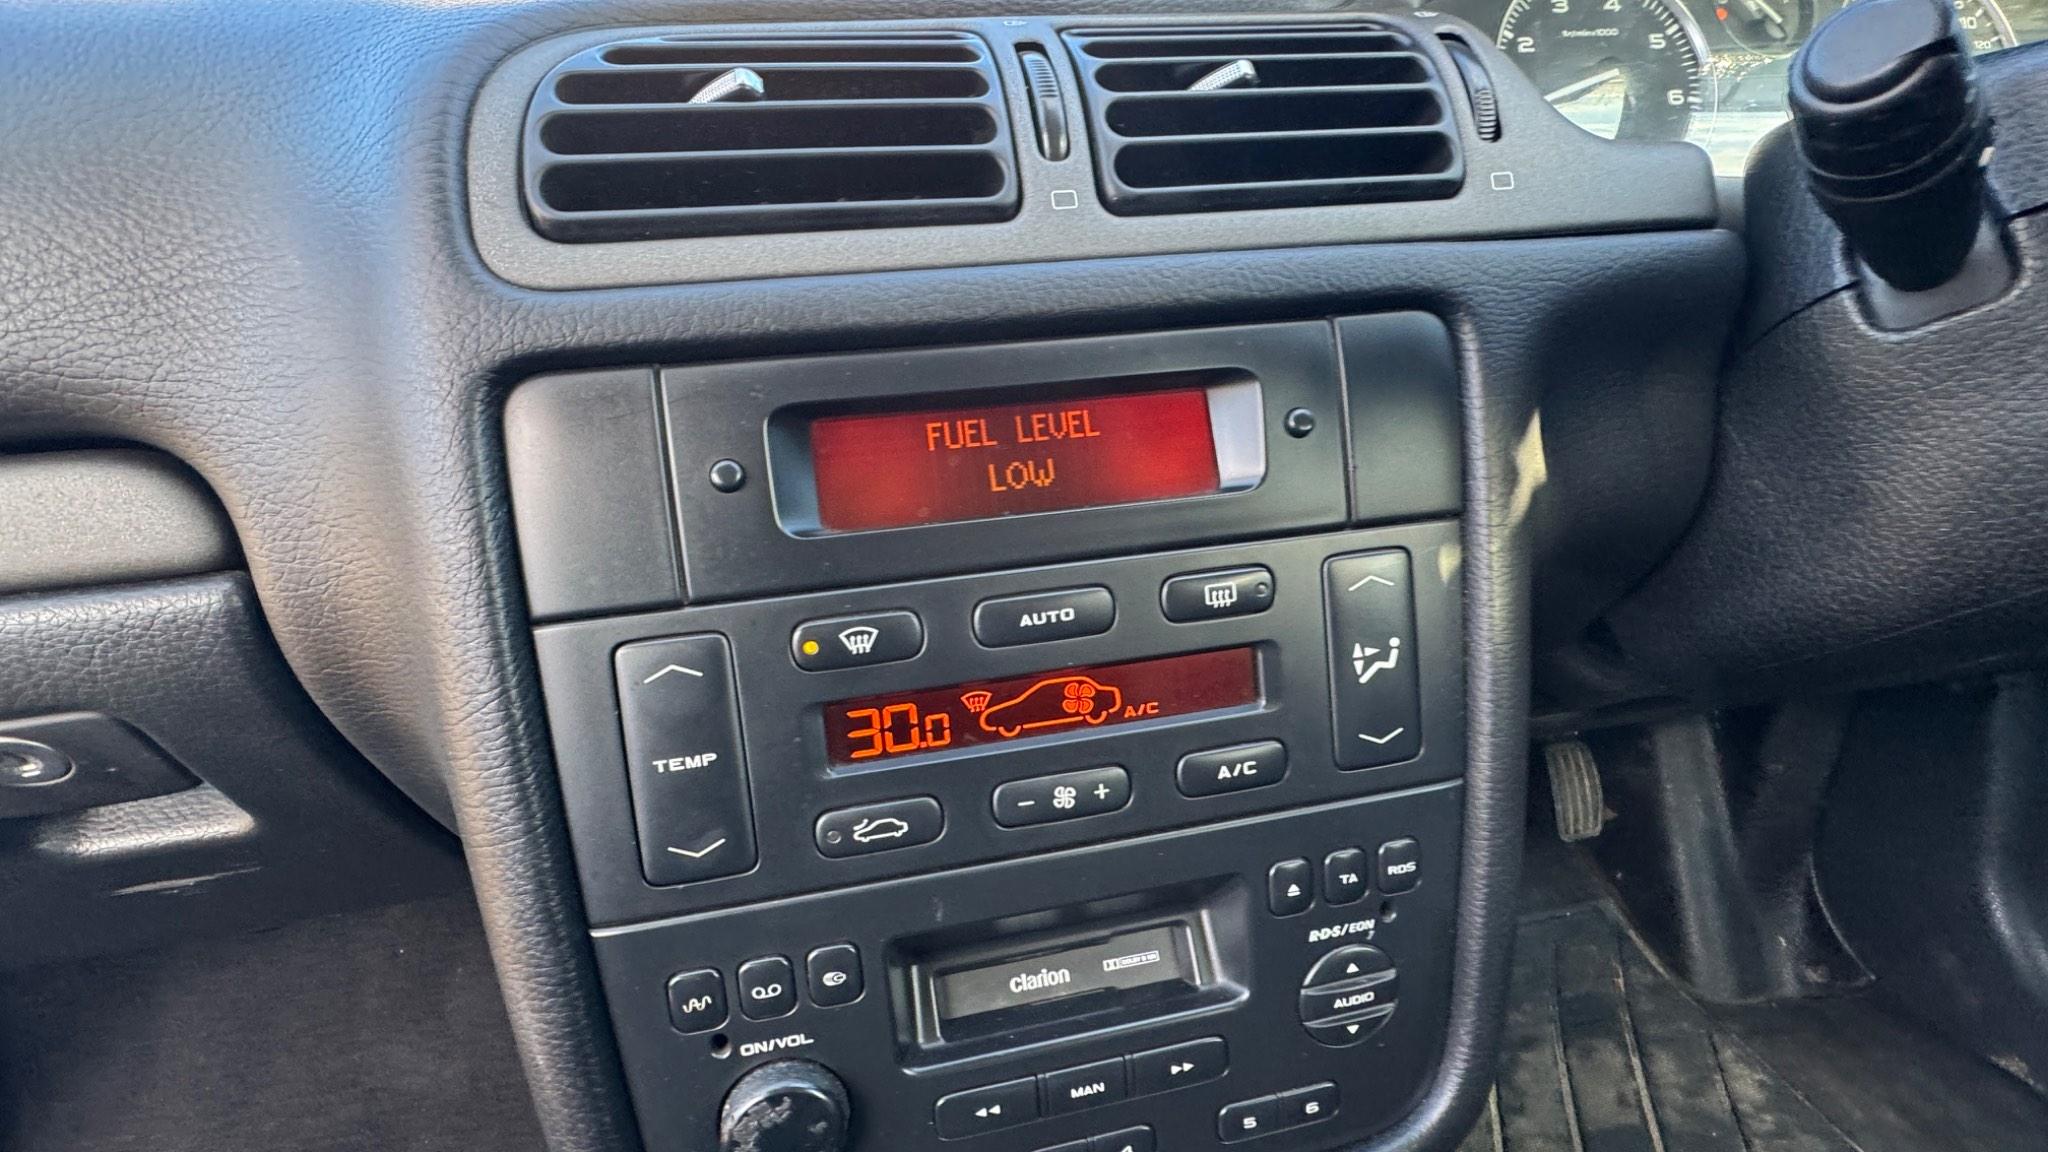 Multimedia Radio used - Peugeot 406 - 6564 32 - GPA